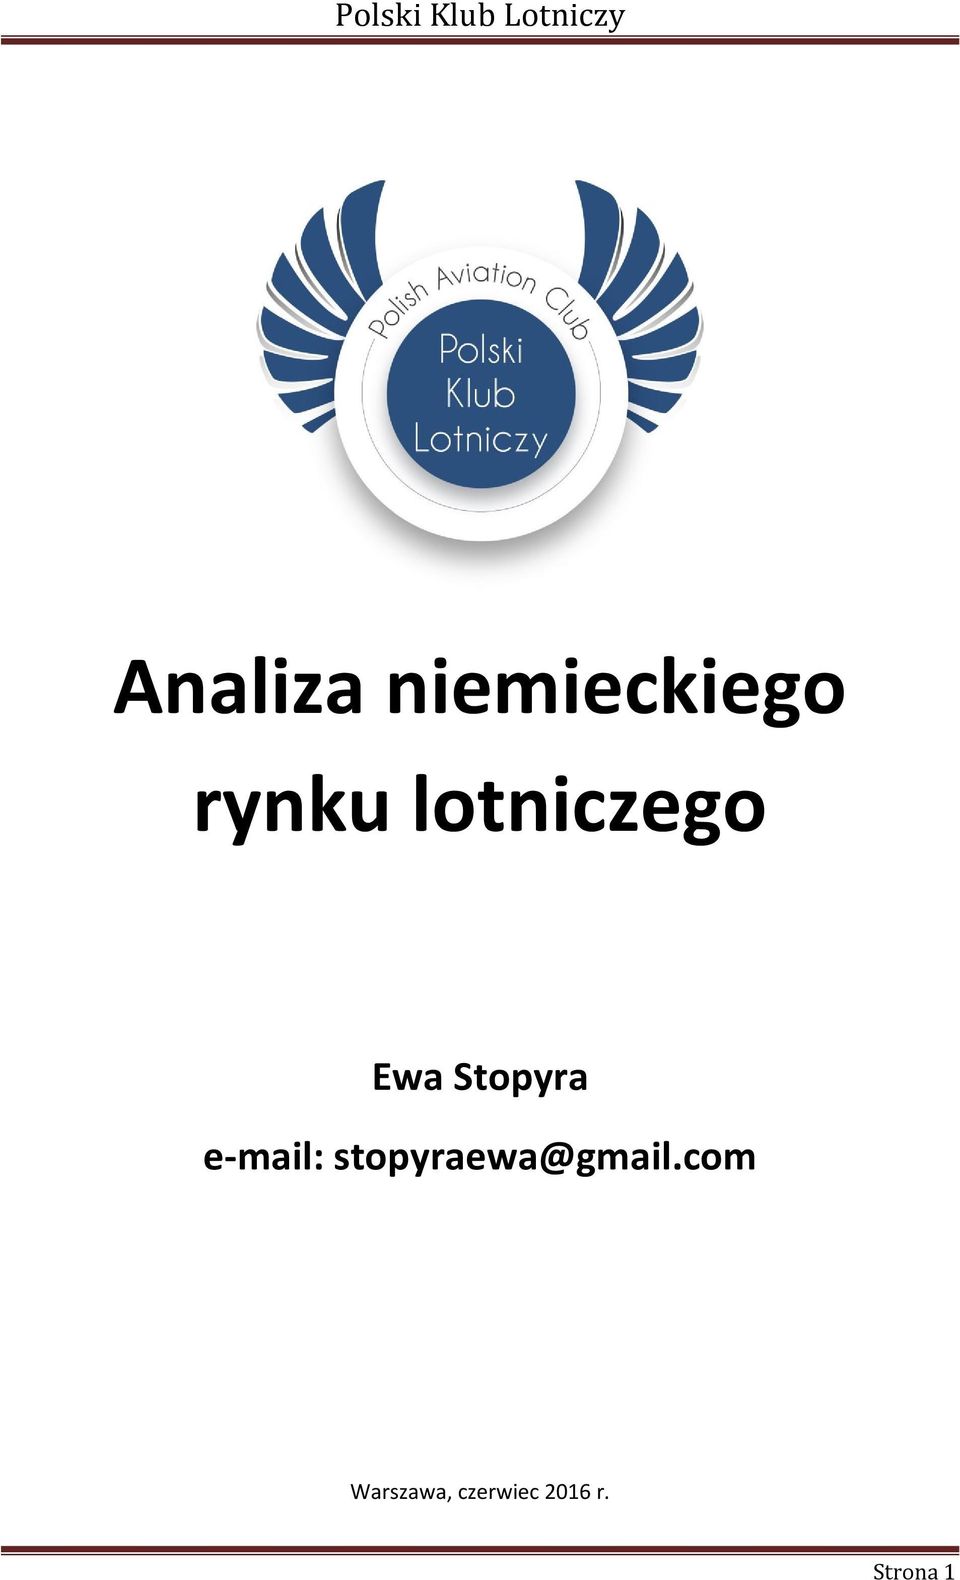 e-mail: stopyraewa@gmail.